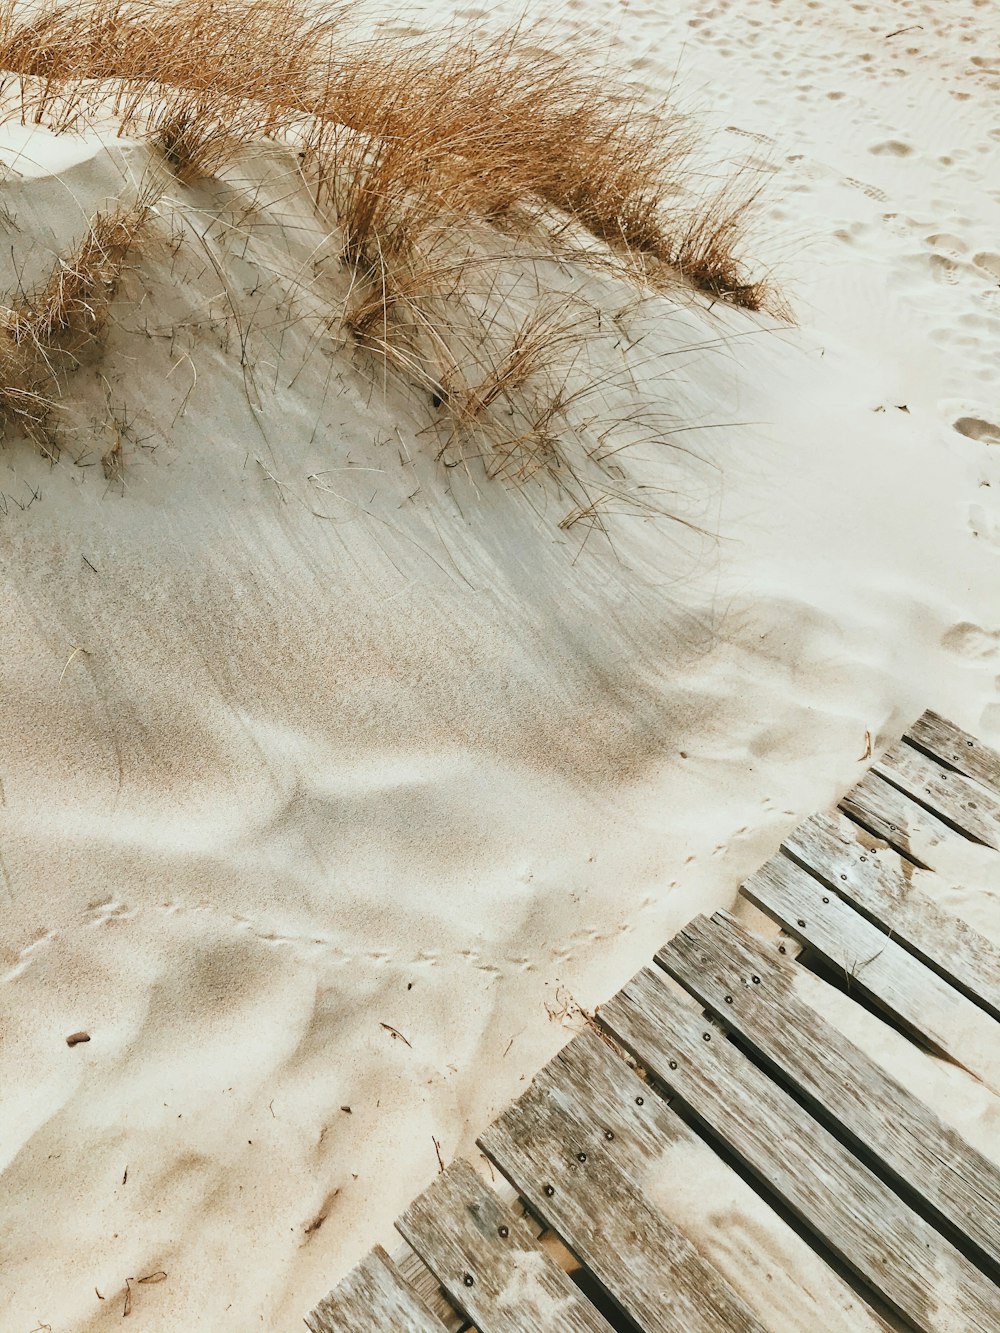 staccionata in legno marrone su sabbia bianca